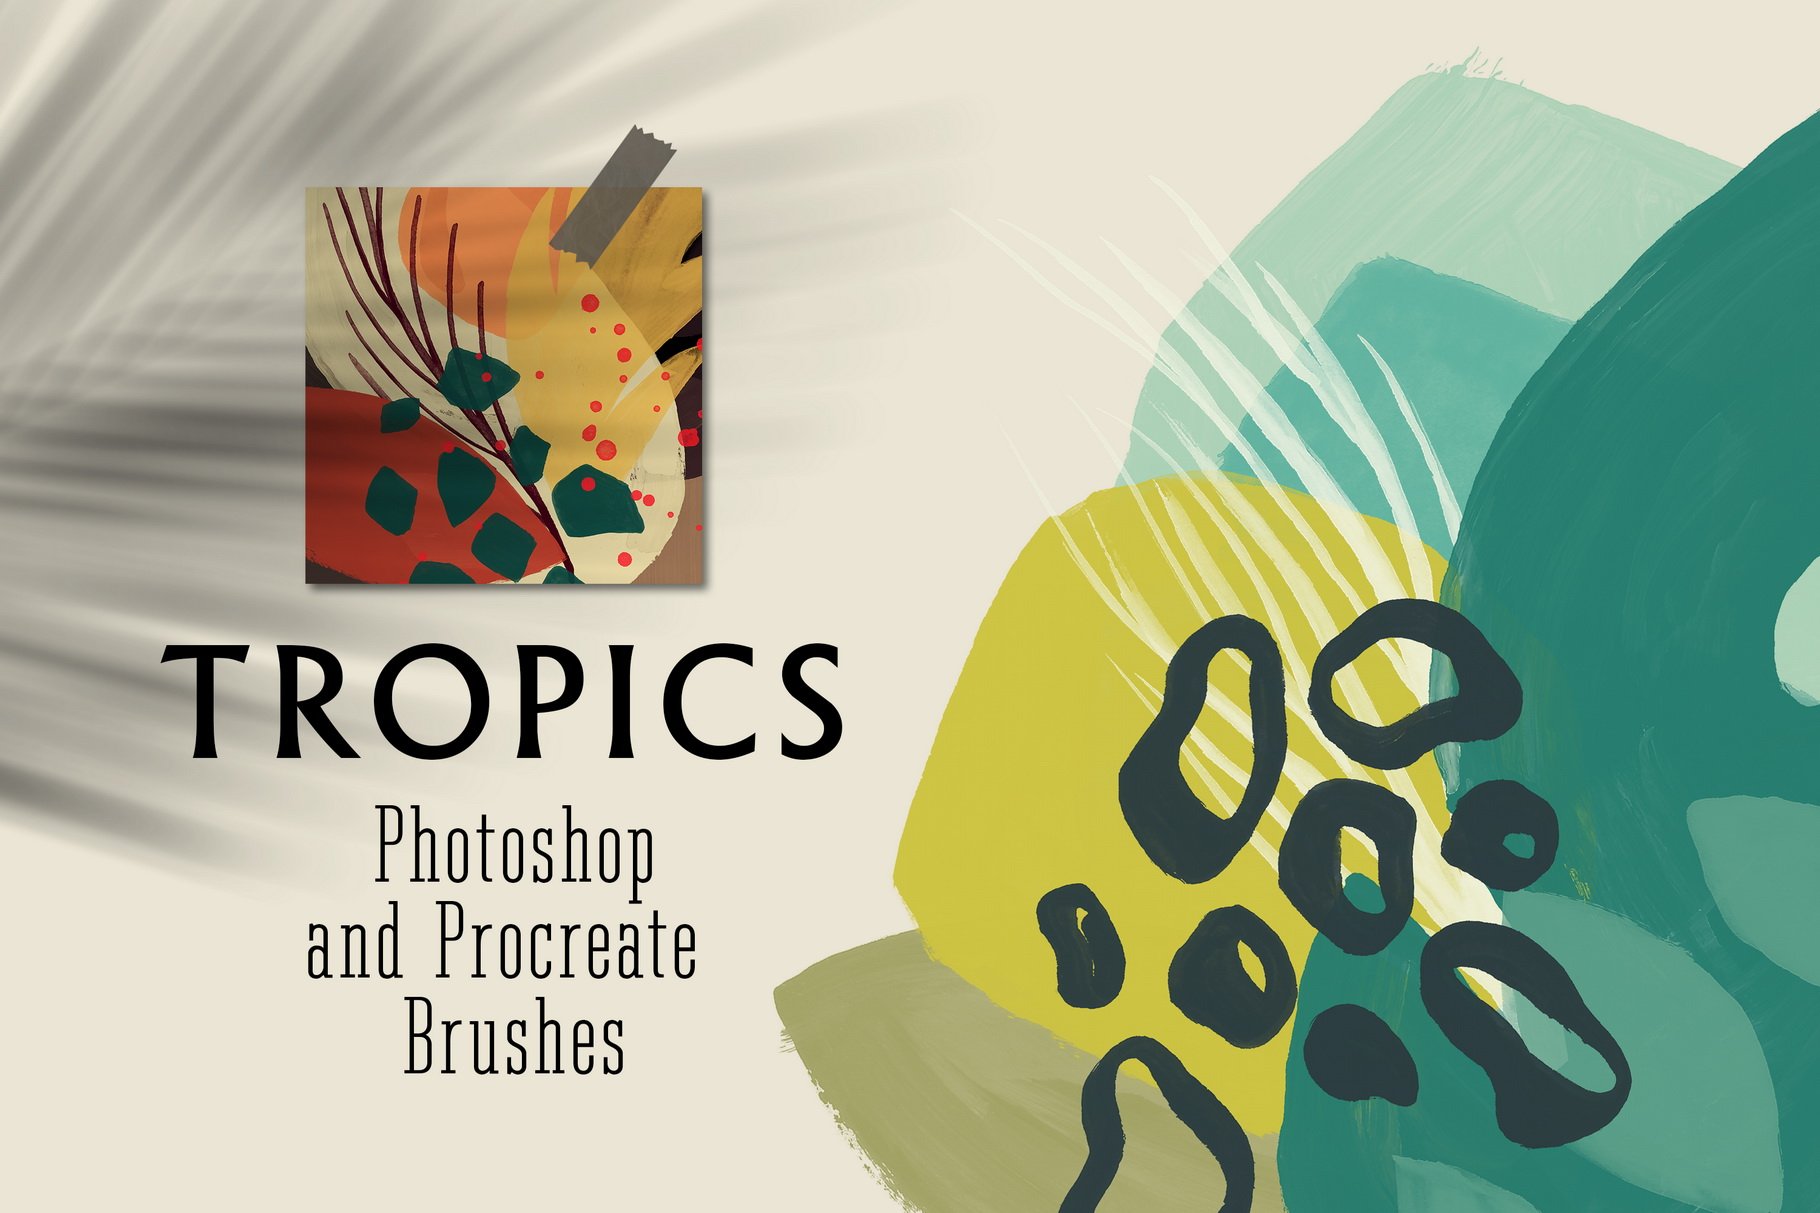 Tropics Photoshop&Procreate Brushescover image.